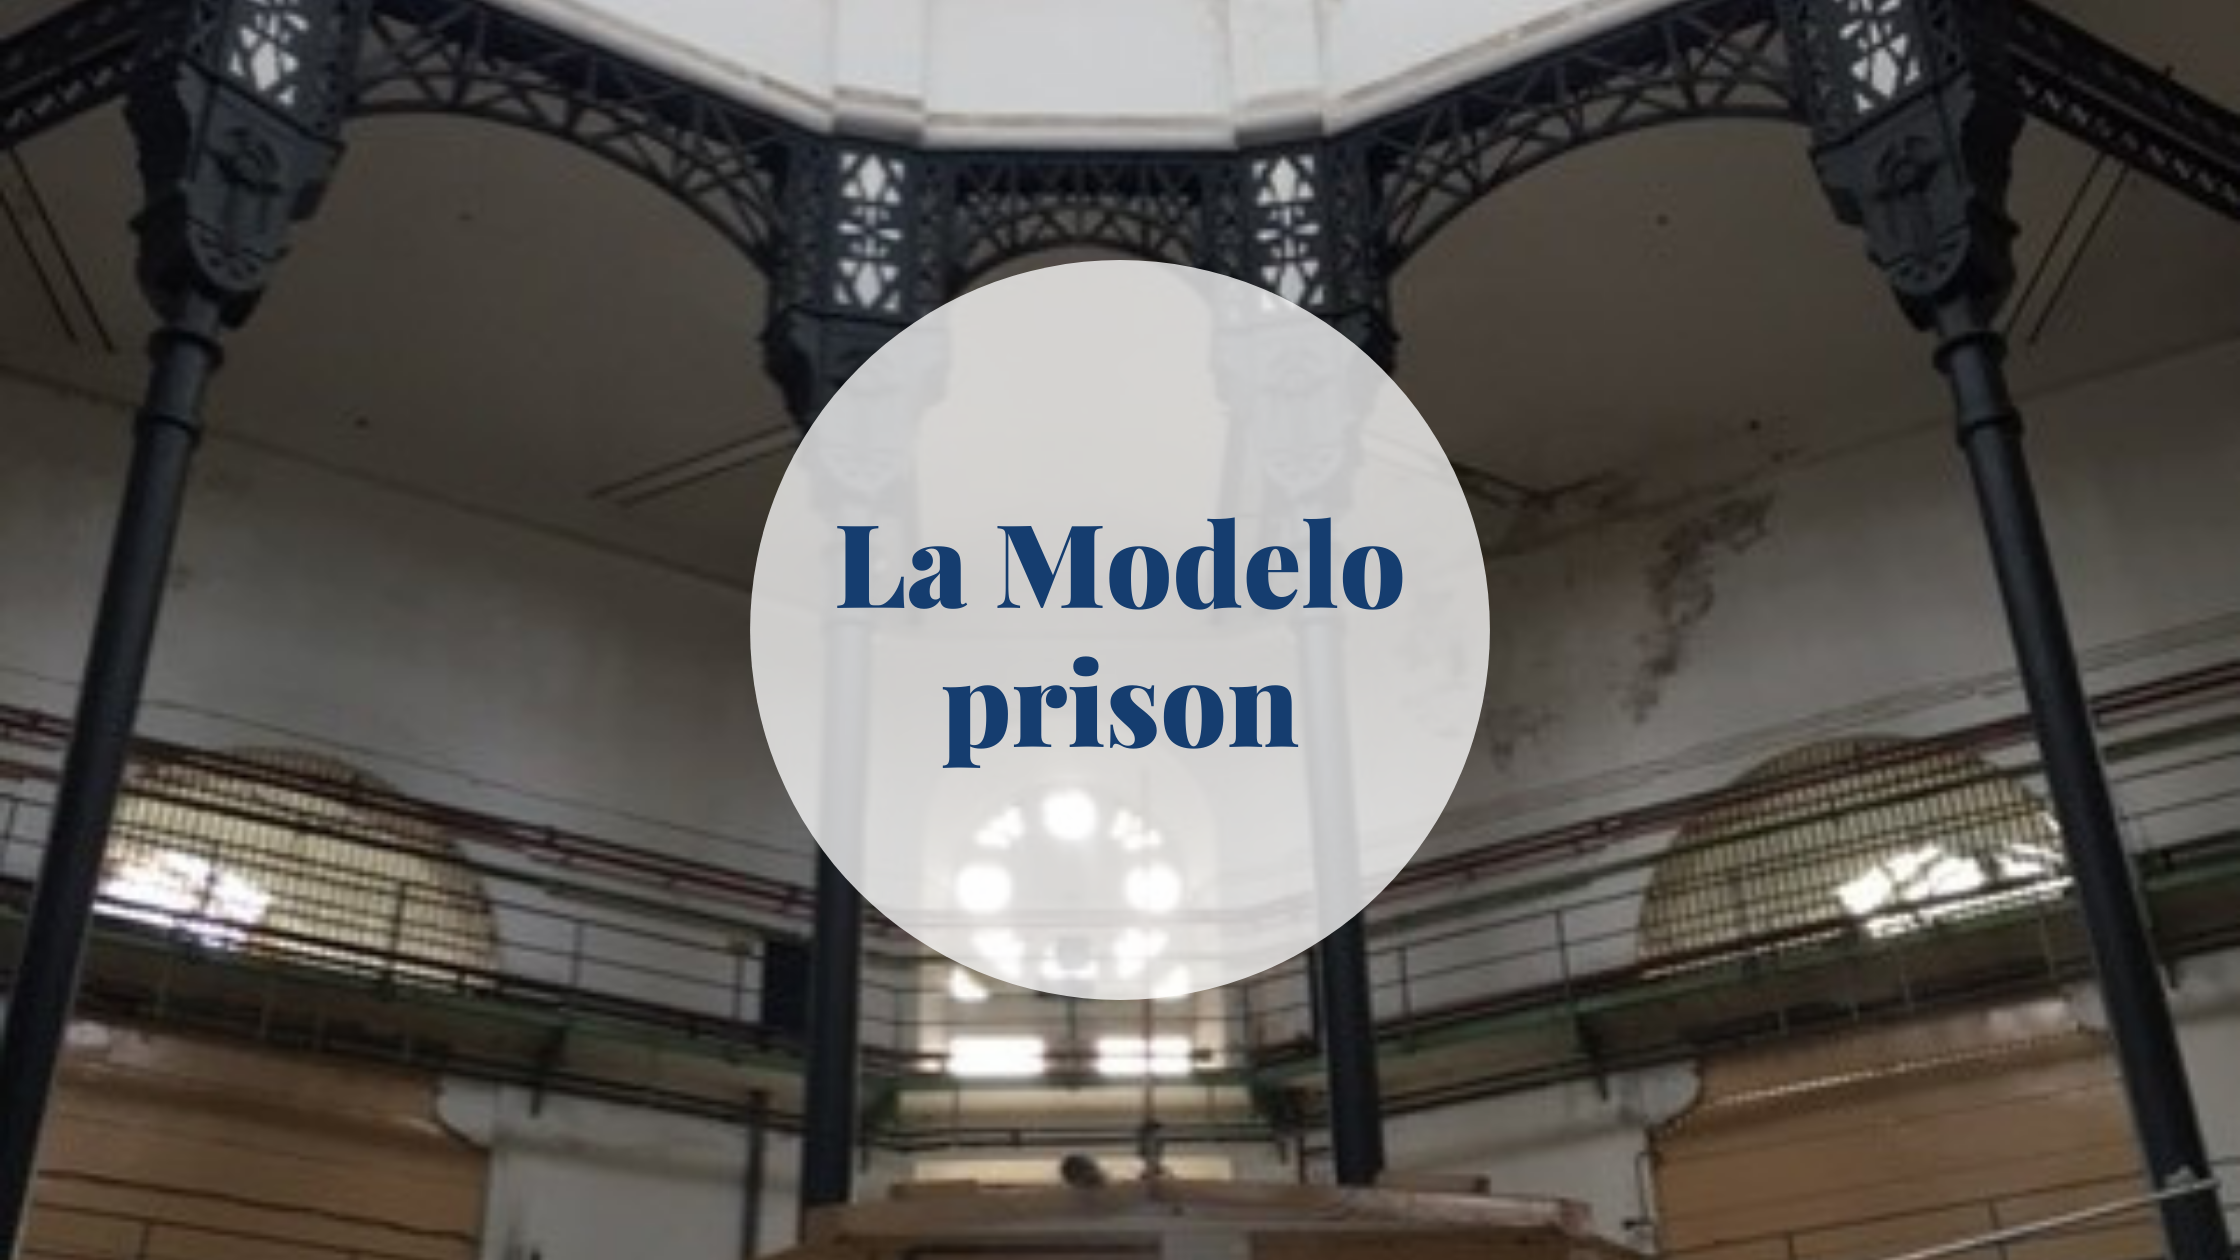 Prison Escape Room In Barcelona